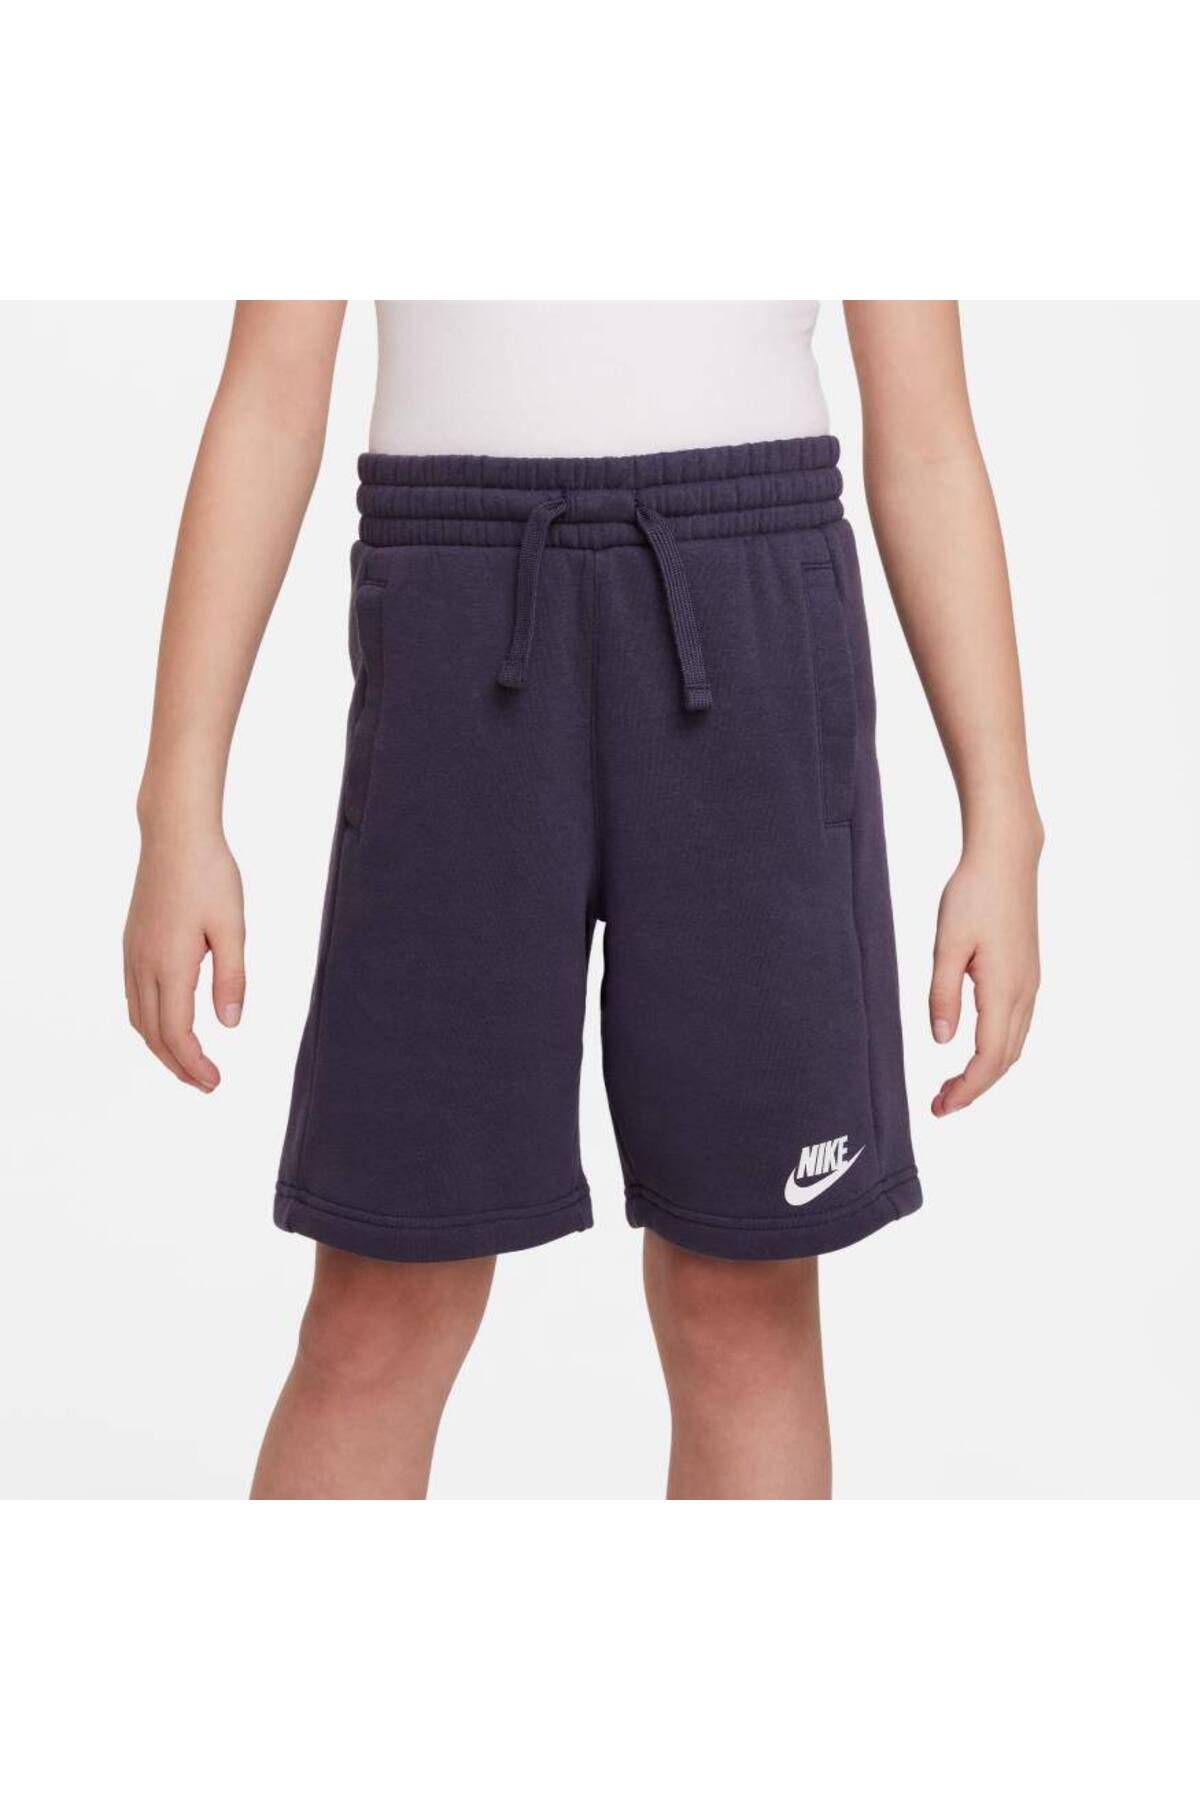 Nike Sportswear Crew Lacivert Çocuk Pamuklu Şort DO6789-443